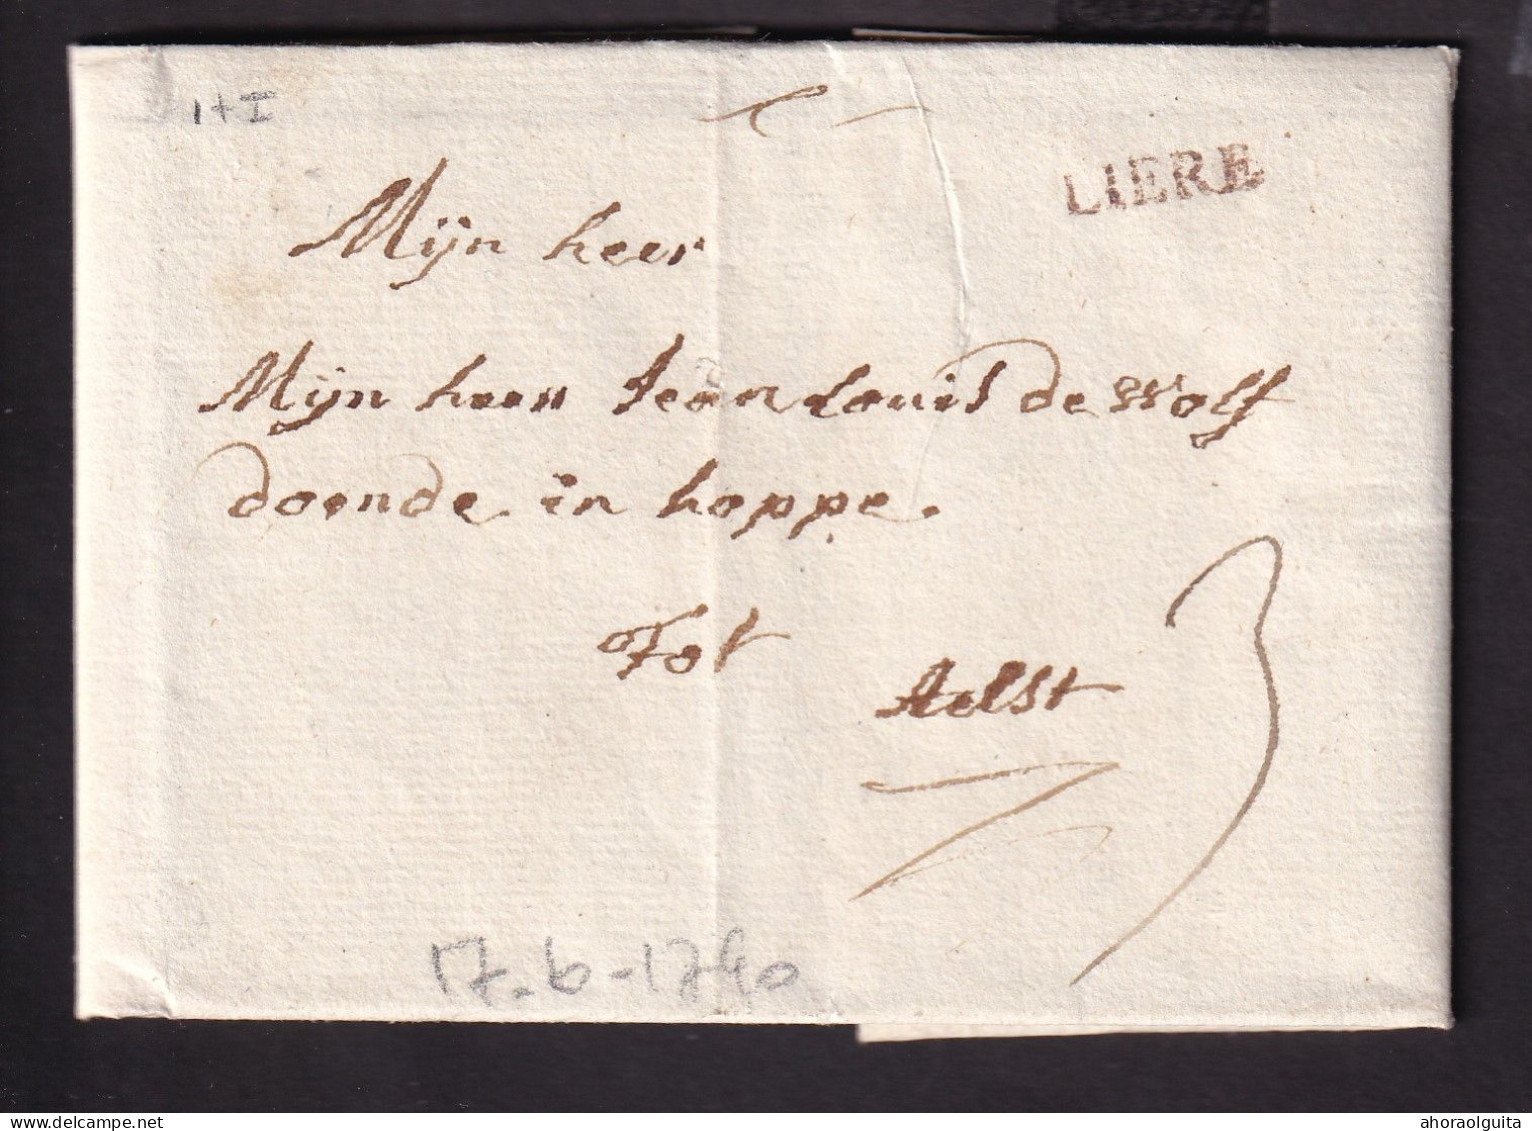 DDCC 403 - Lettre Précurseur 17 Juin 1790 (Révolution Belge) - Griffe H 14 Rouge LIERE Vers AELST - Port 3 St. Encre - 1789-1790 (Révol. Brabançonne)